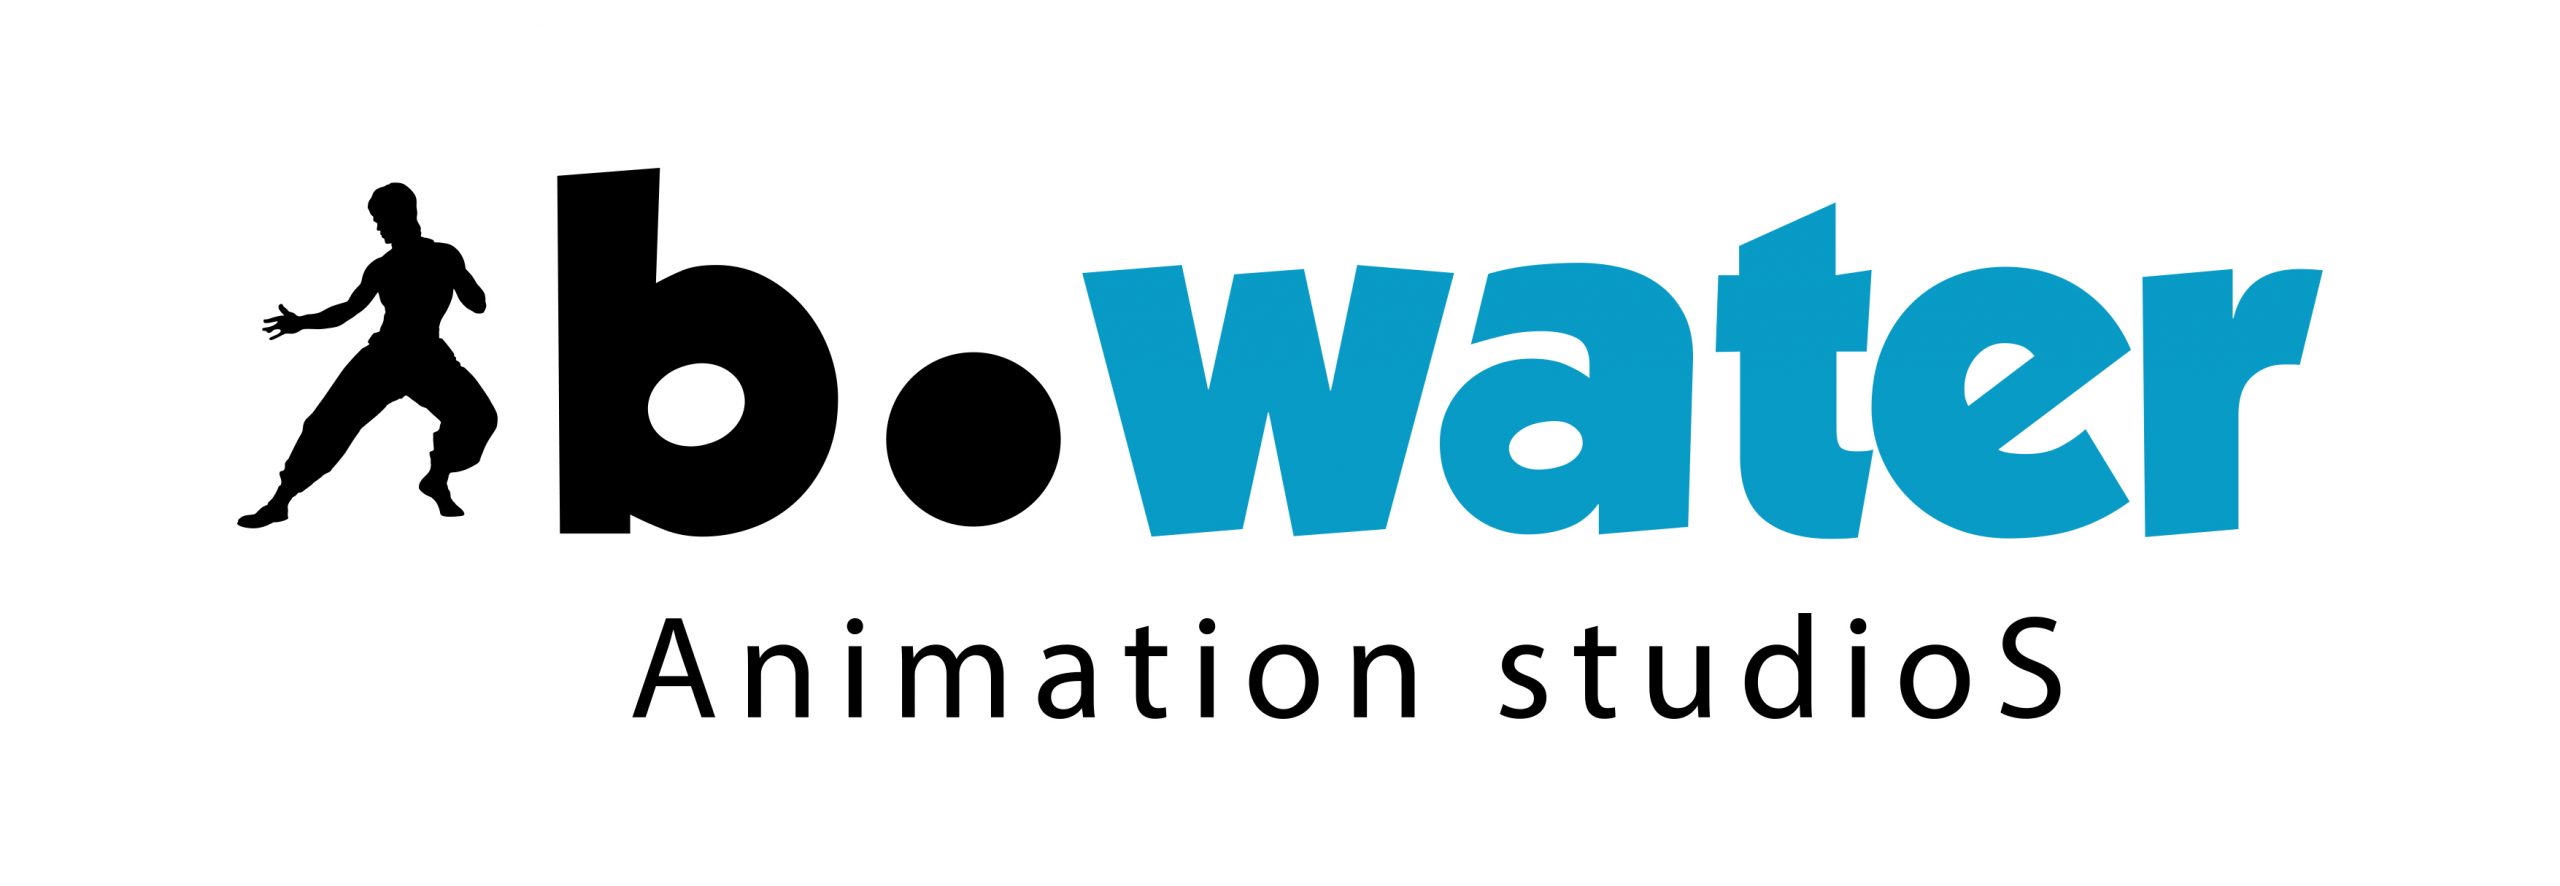 bwater-logo